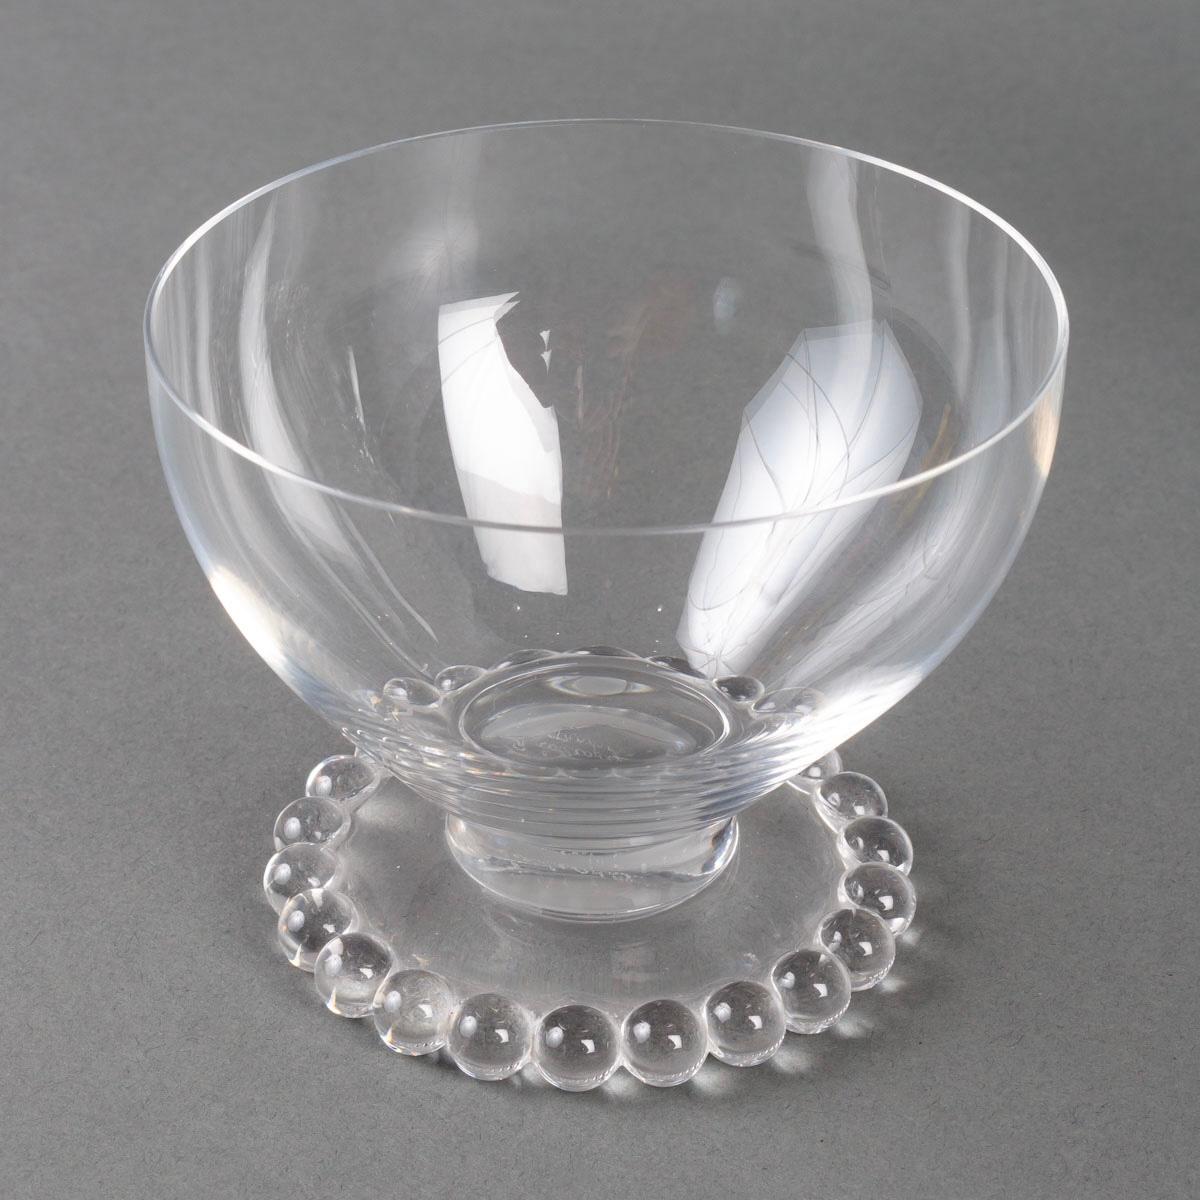 Molded 1935 René Lalique, Tablewares Glasses Decanters Boules Glass, 34 Pieces For Sale